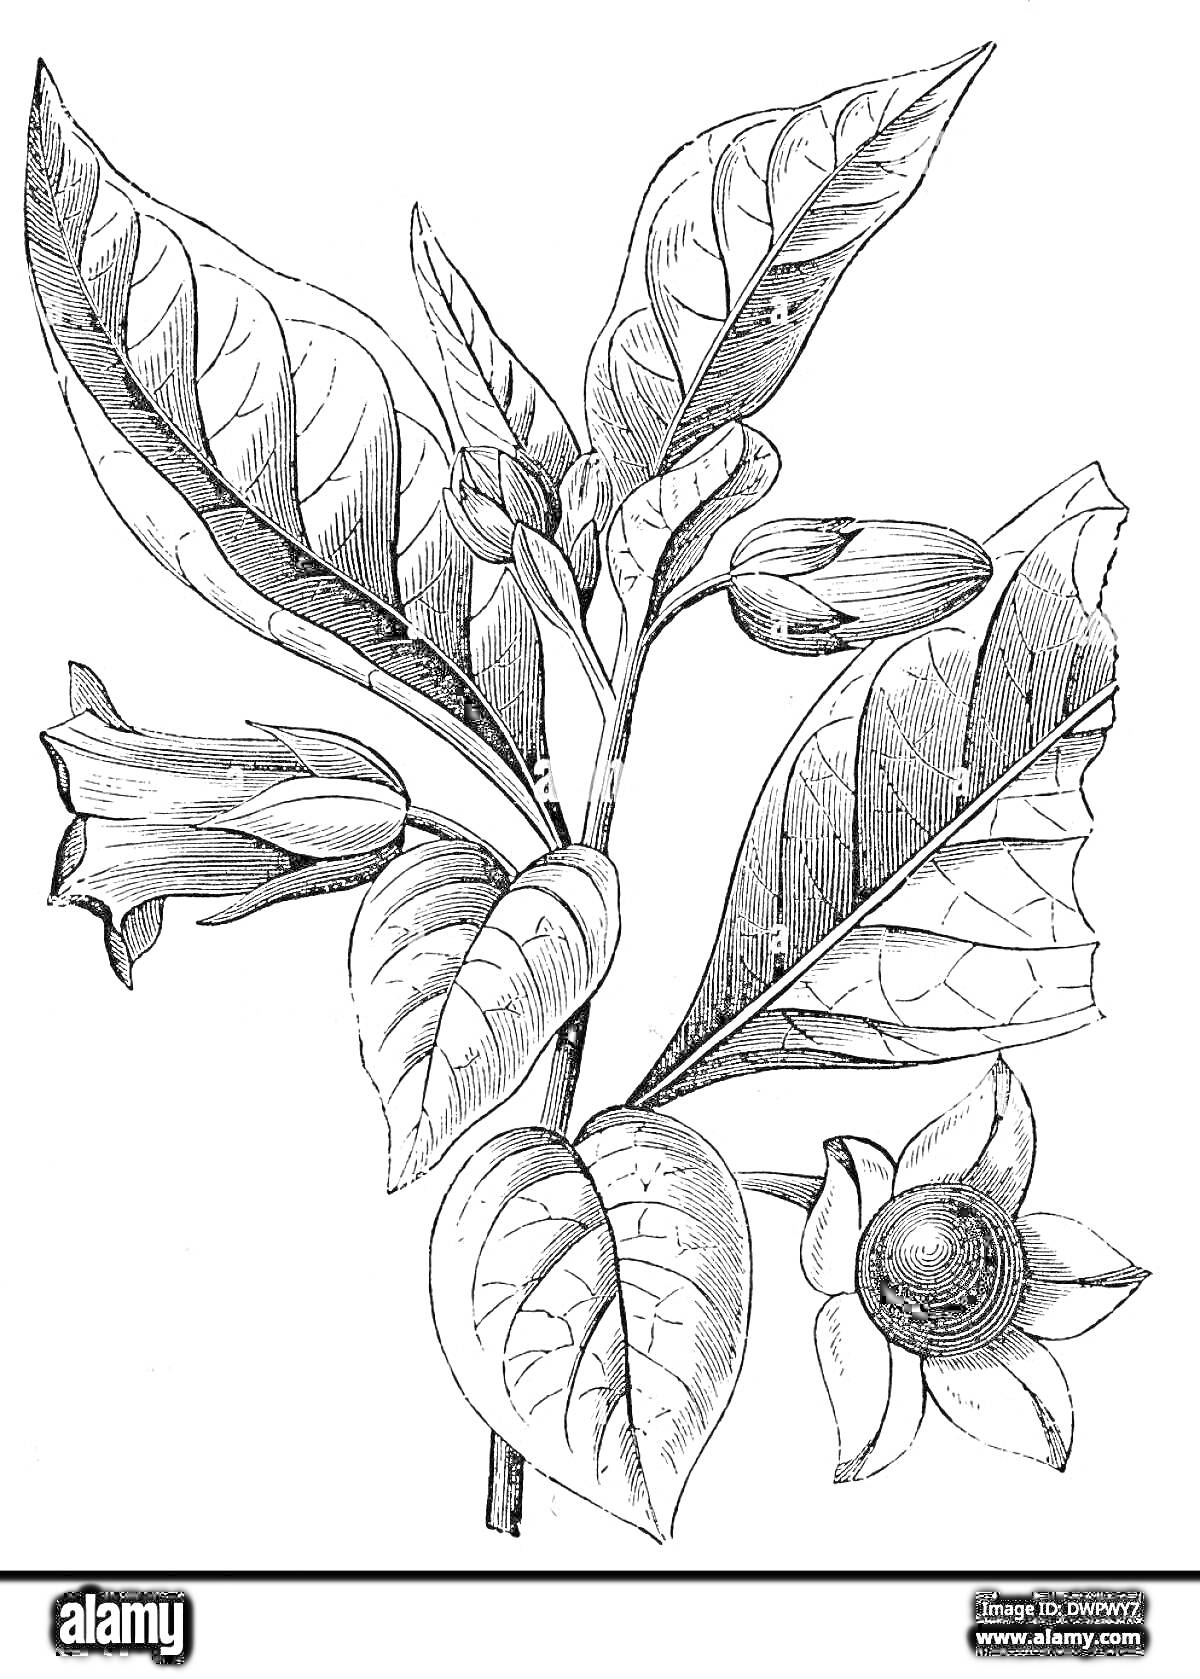 Раскраска рисунок растения белладонна с листьями, бутонами, цветами и ягодами